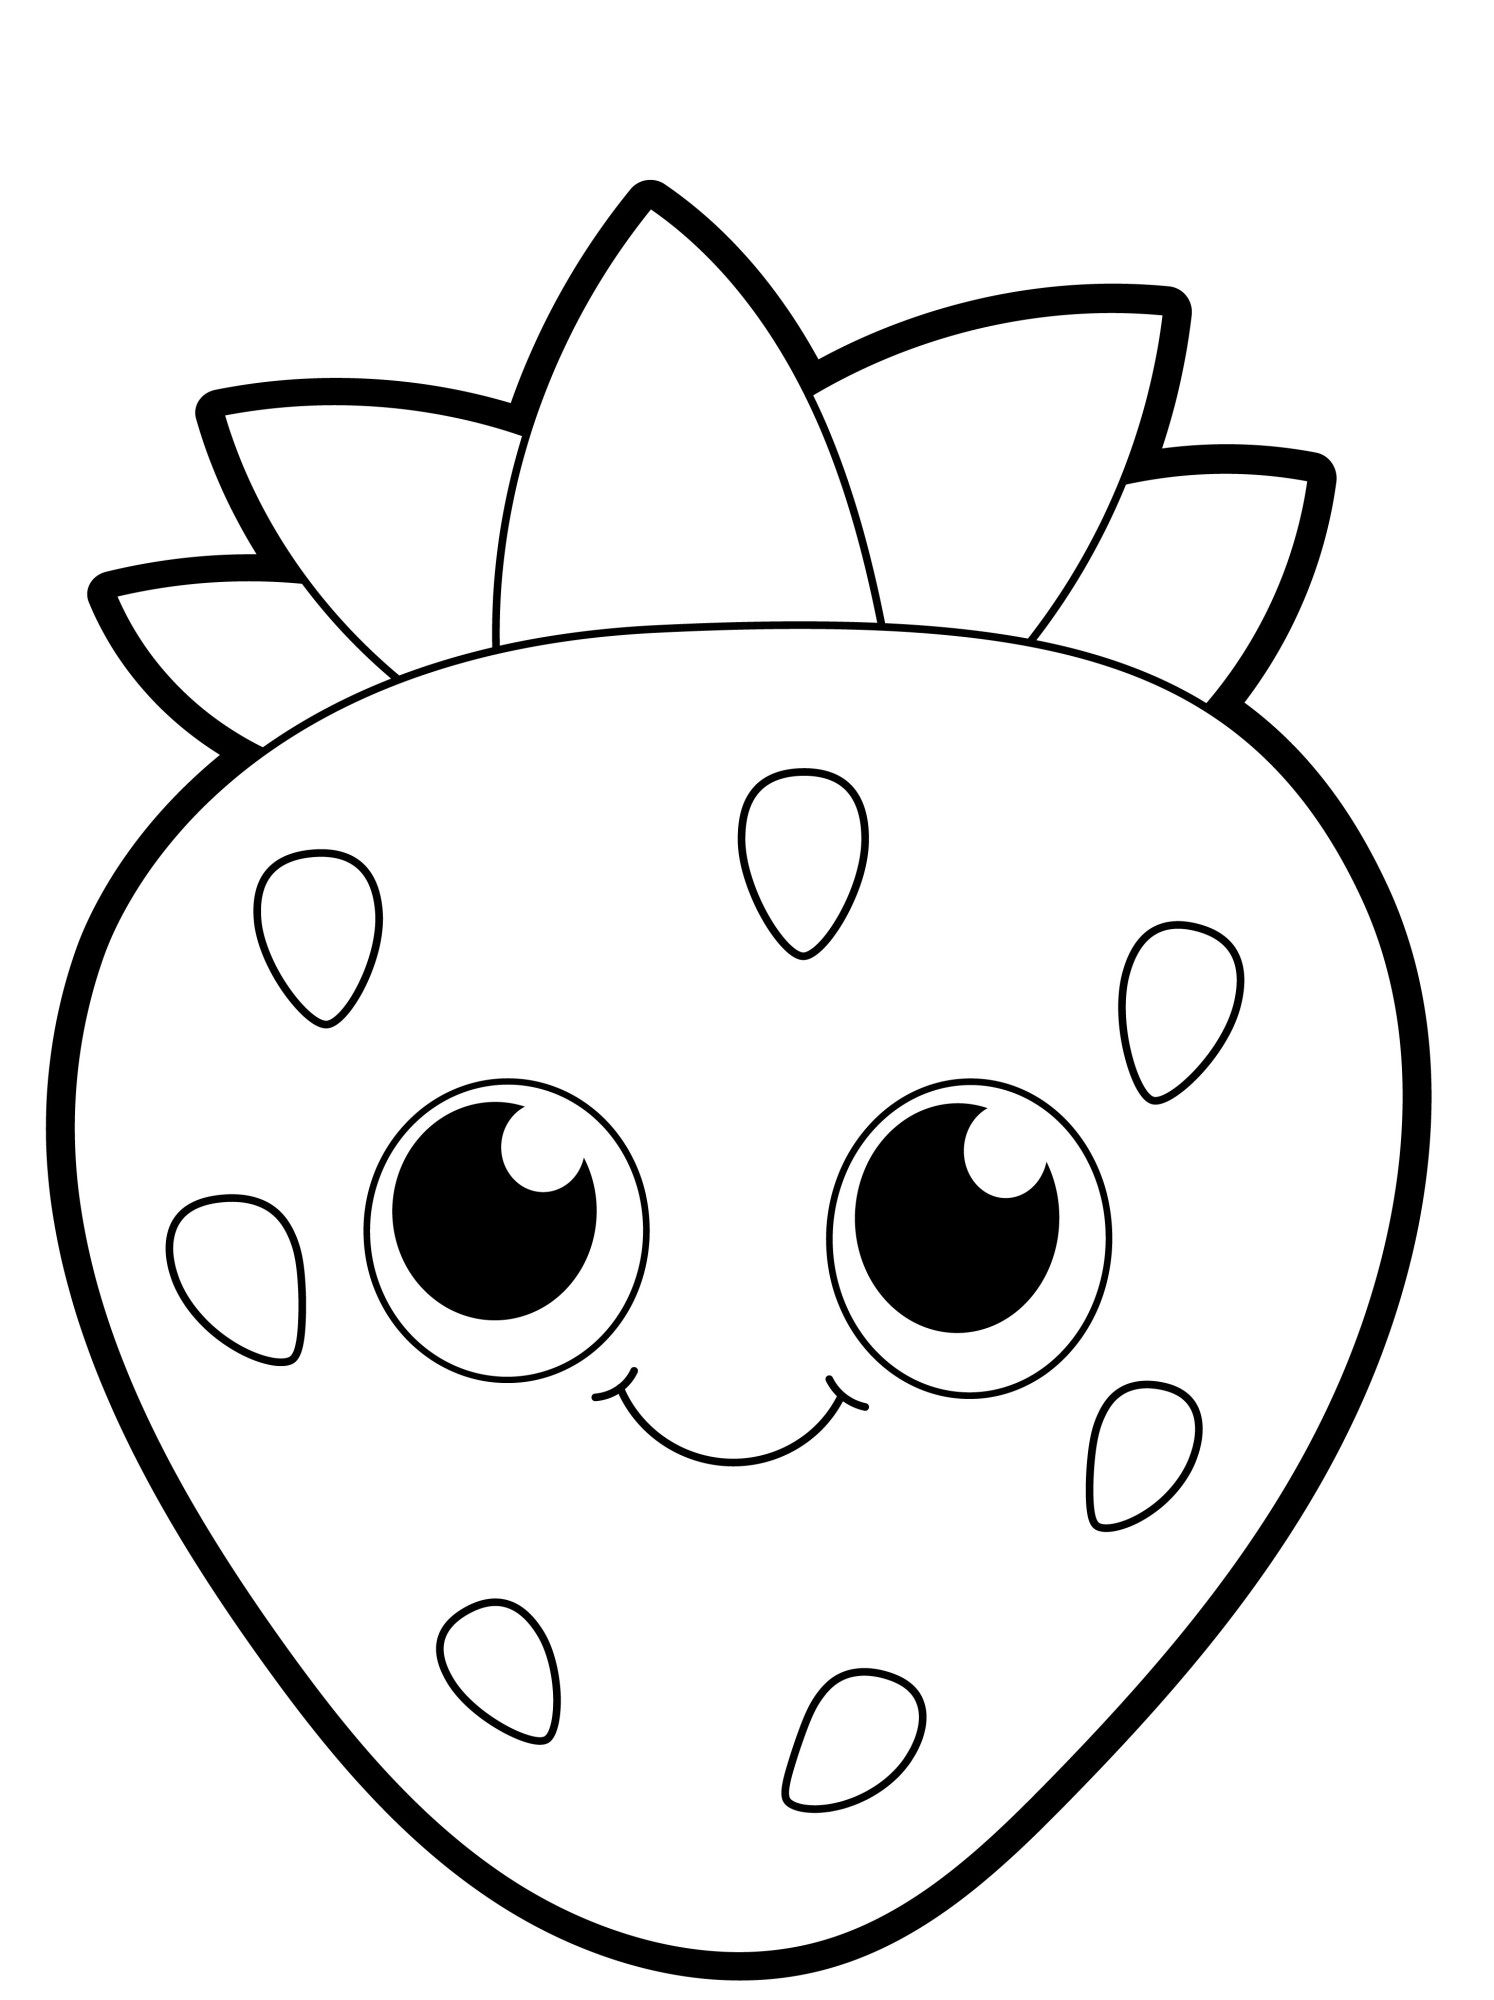 Раскраска для детей: сказочная ягода клубники с большими глазами